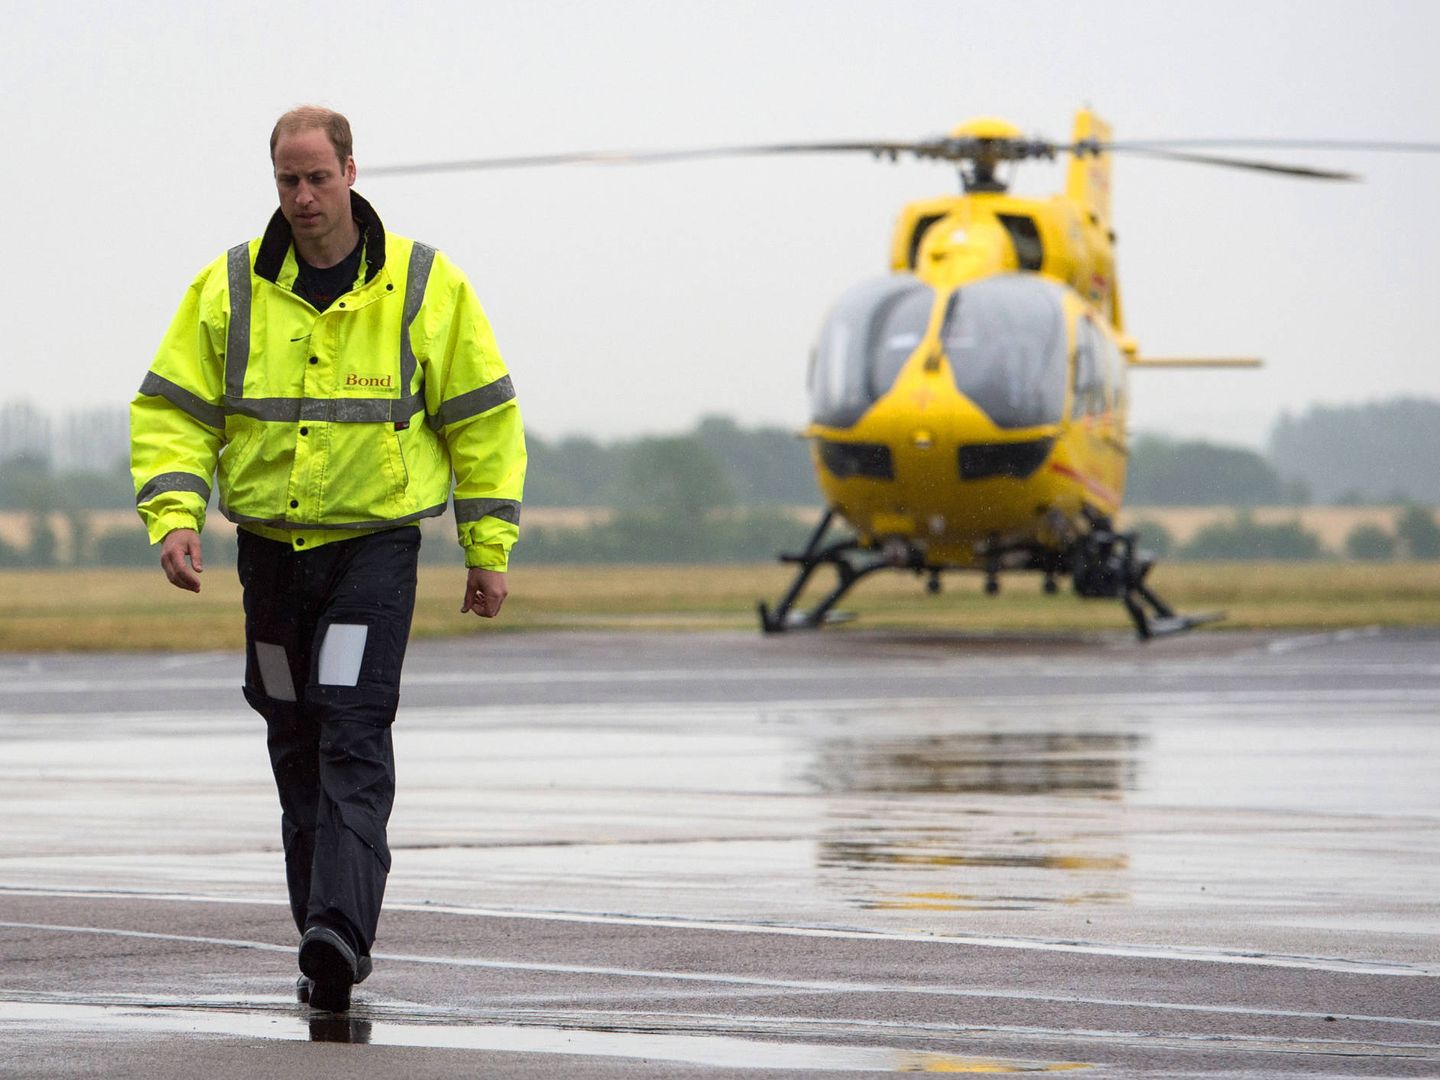 El duque ha realizado diversas operaciones de salvamento en un helicóptero ambulancia. (Getty)